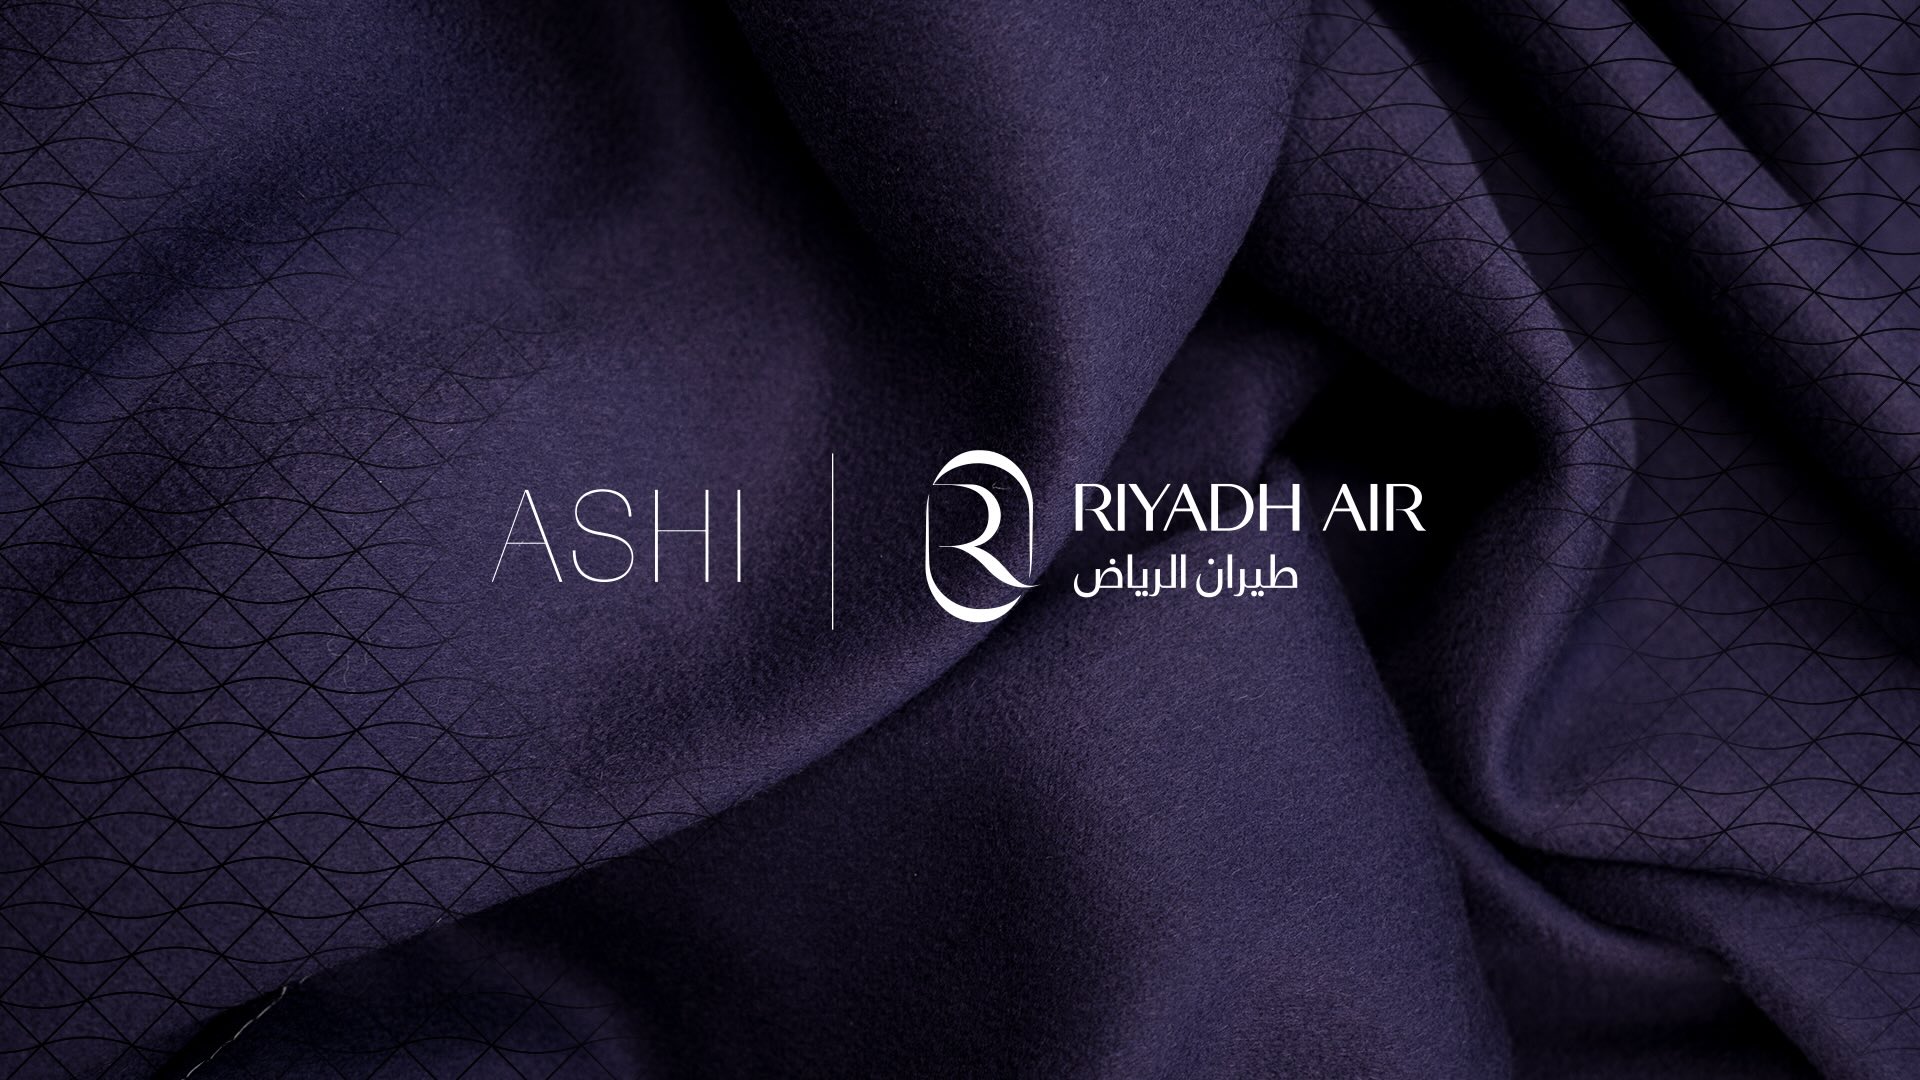 Mohammed Ashi Riyadh Air